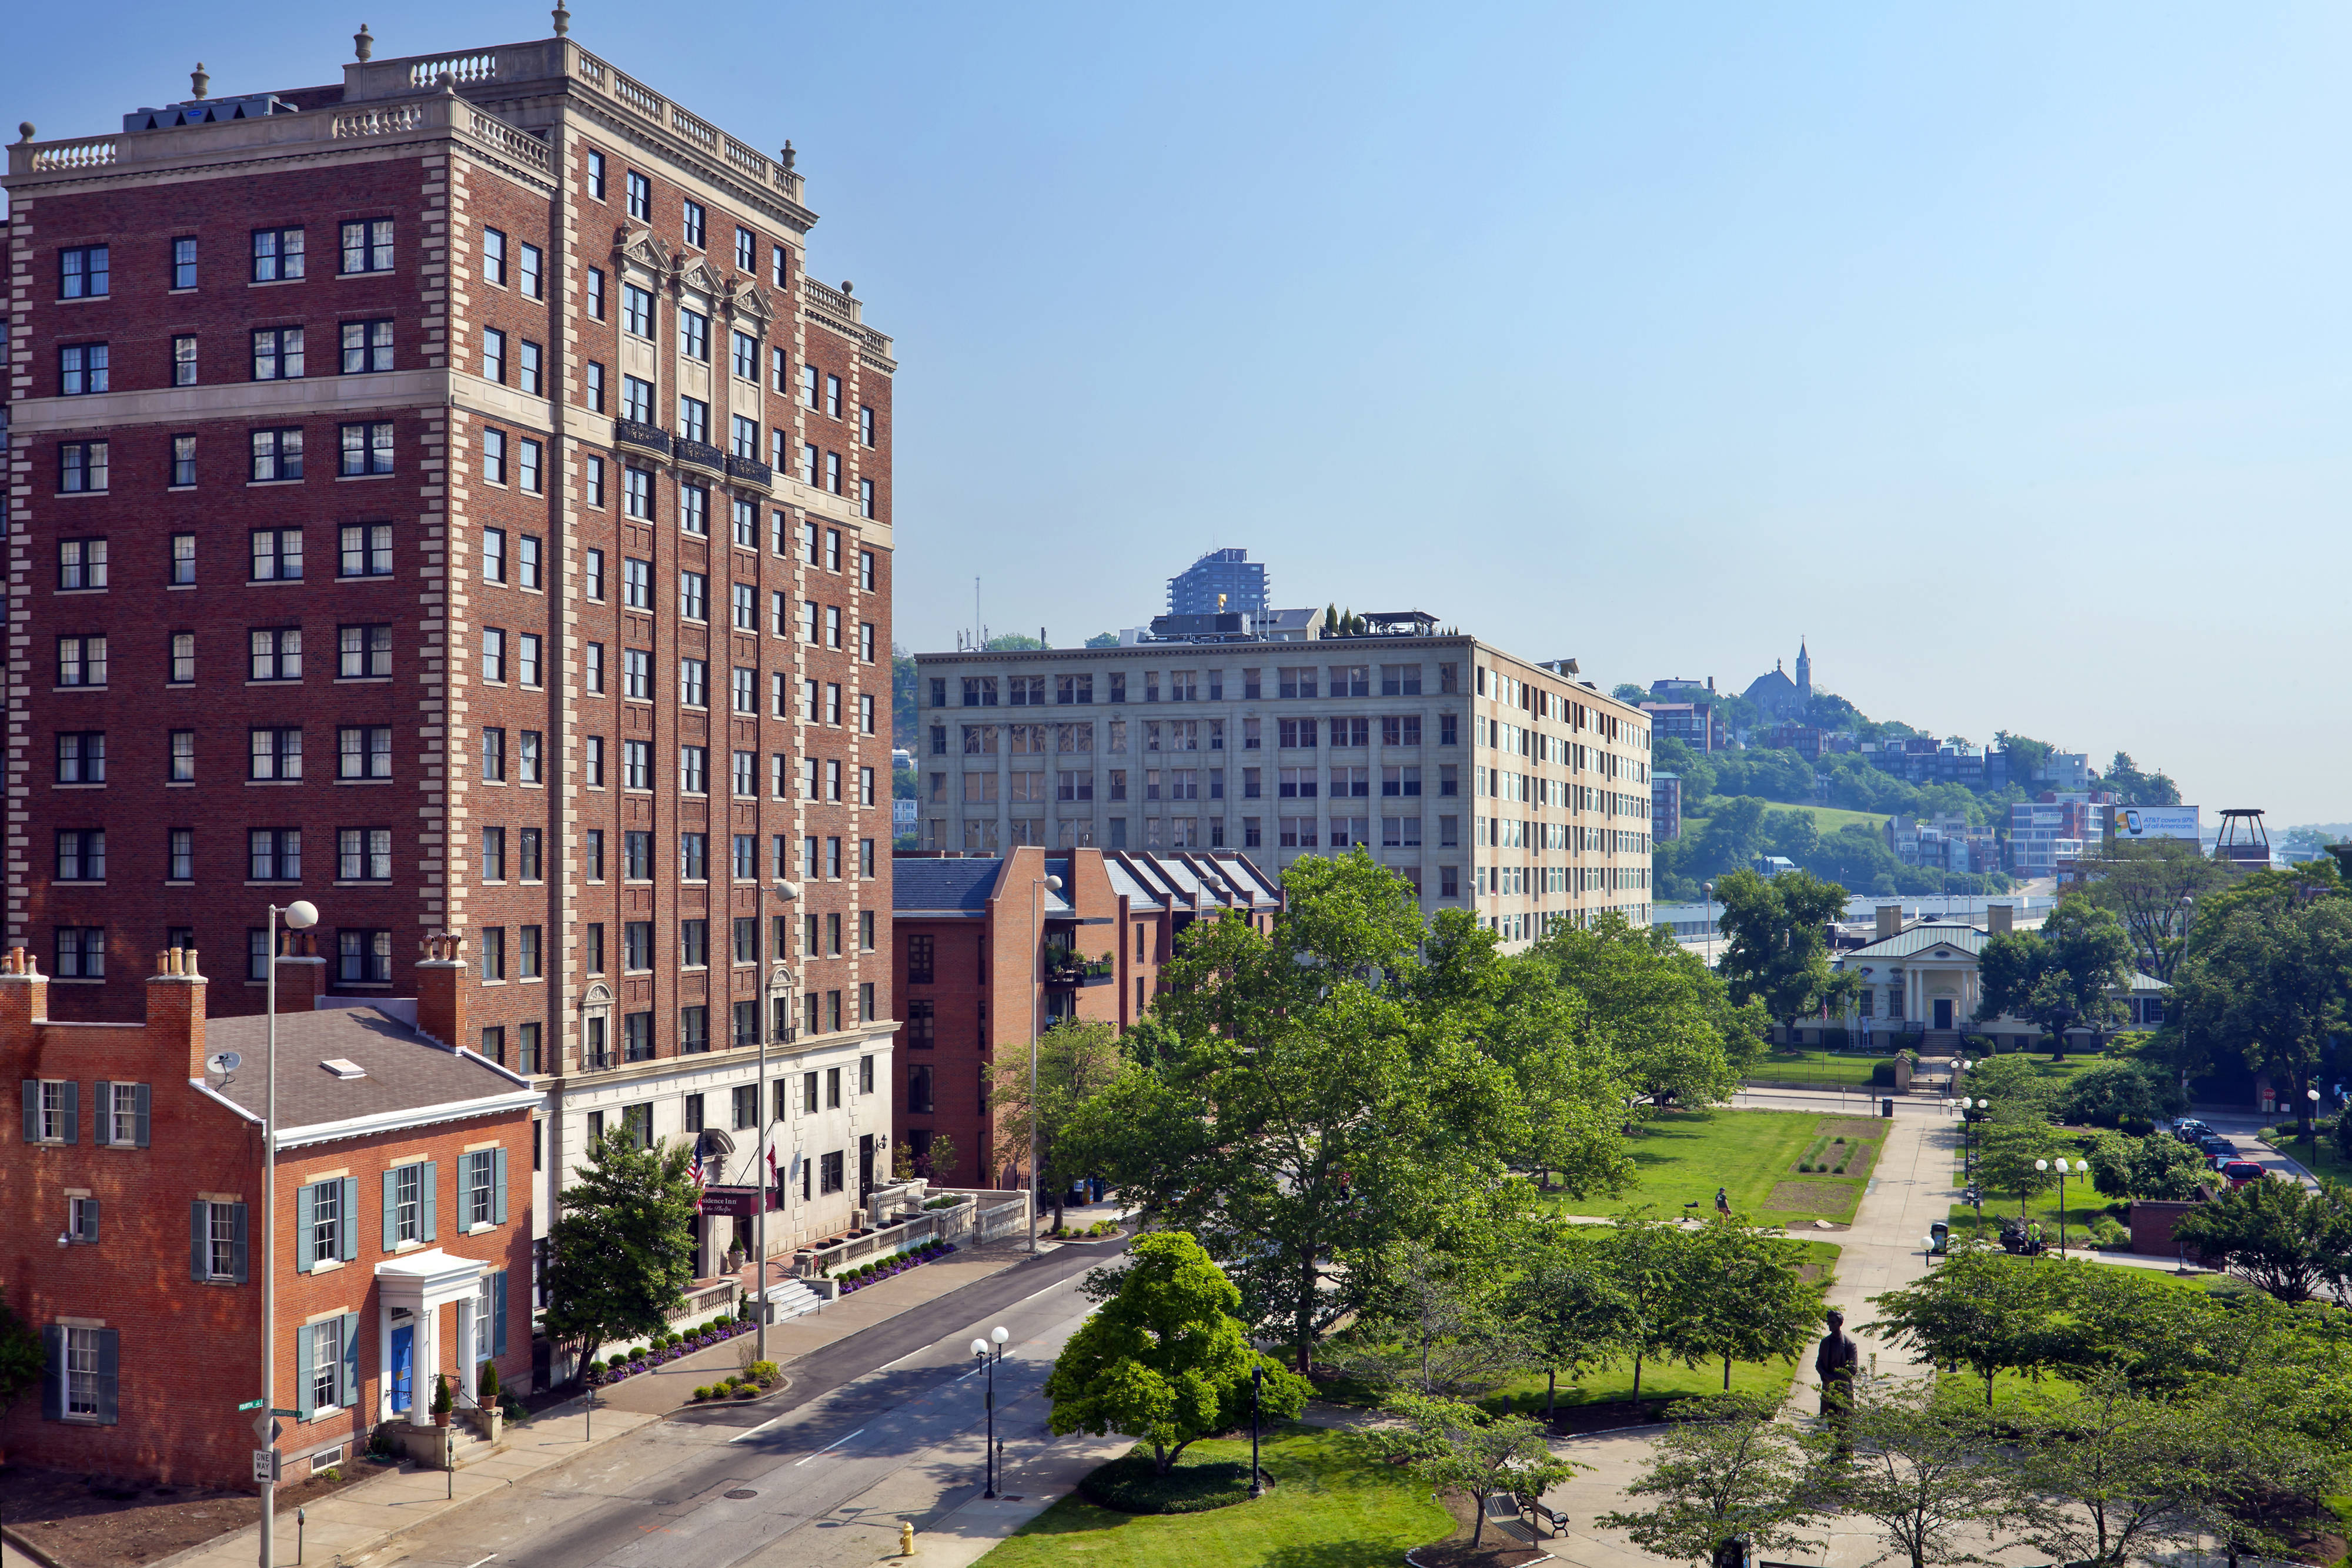 Photo of Residence Inn by Marriott Cincinnati Downtown/The Phelps, Cincinnati, OH